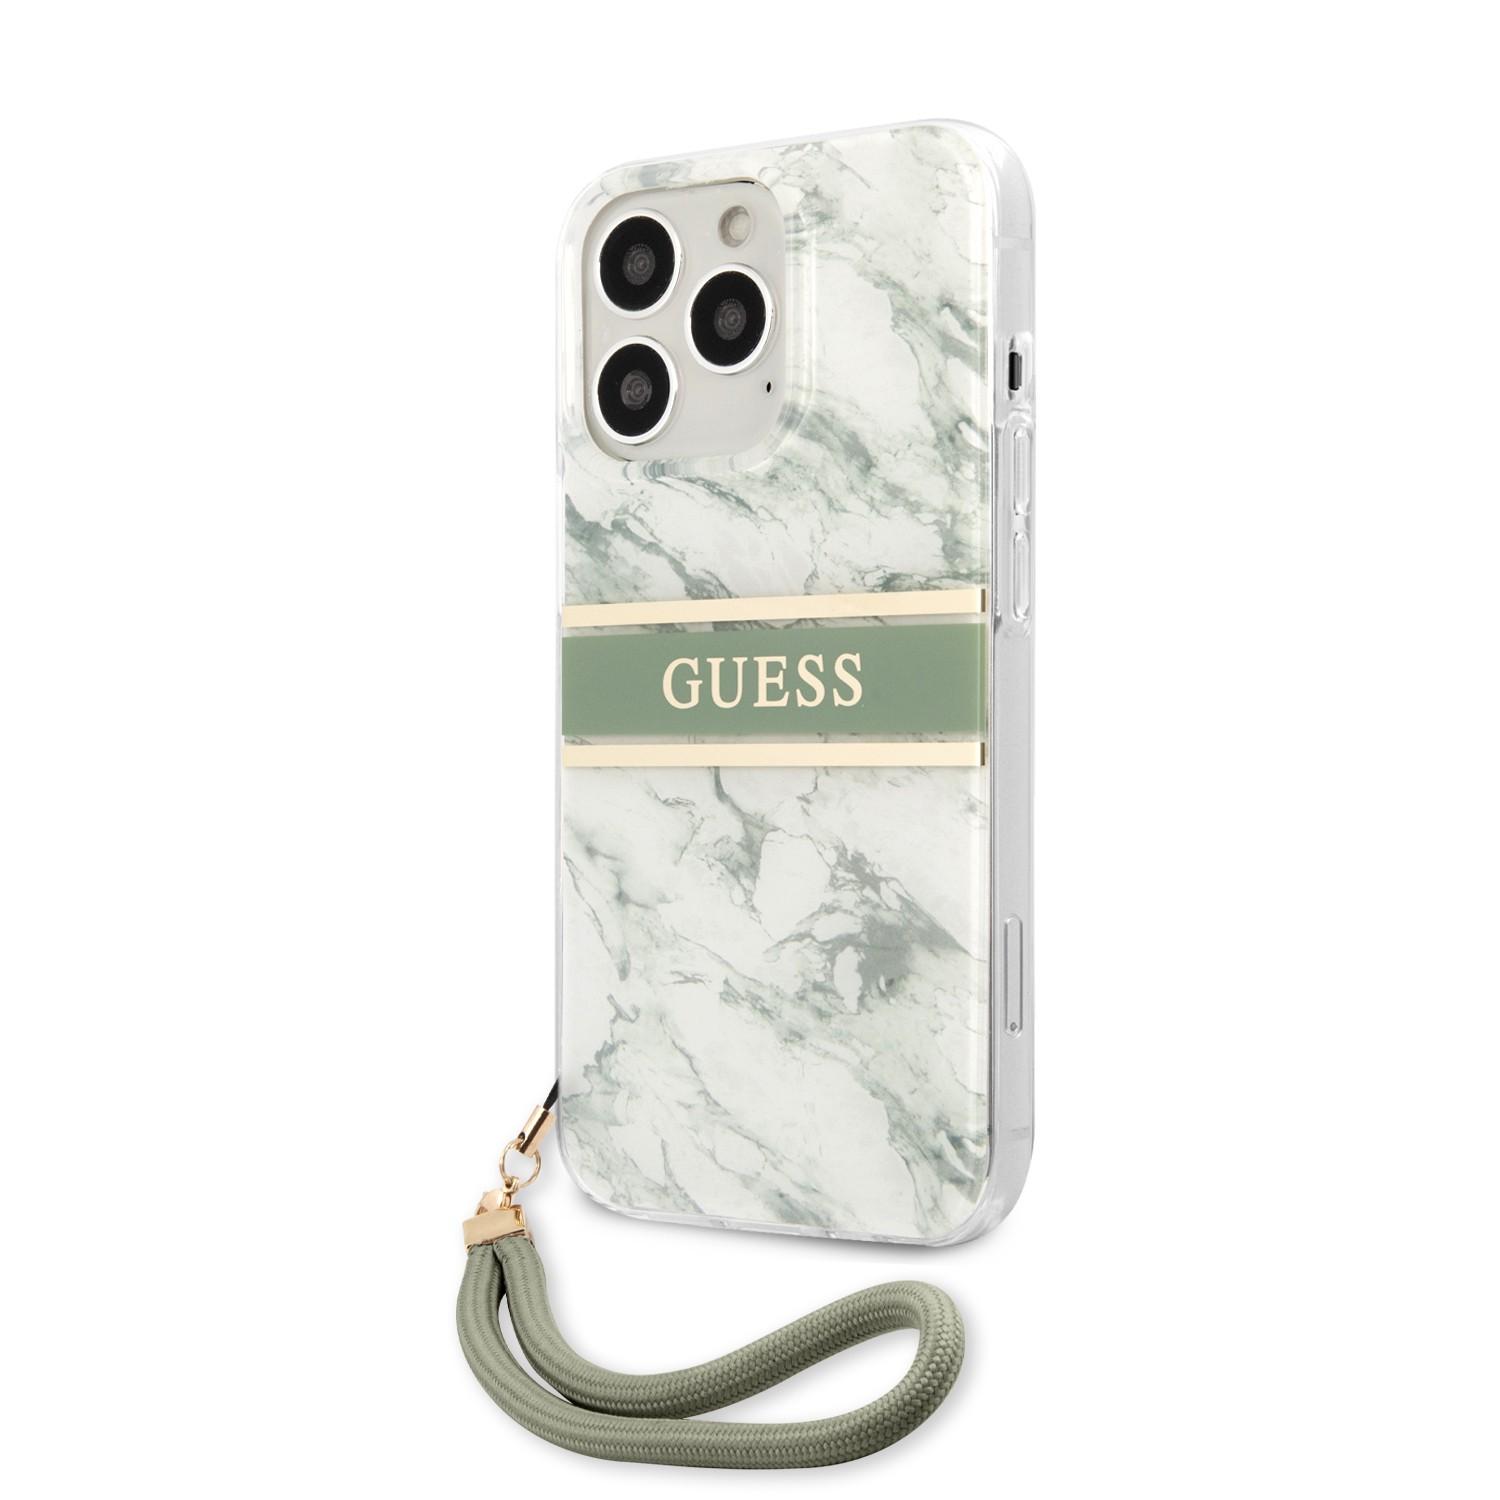 كفر ايفون 13 برو مع تعليقة جوال أخضر جيس Guess PC/TPU Case Marble Design And Stripe With Nylon Strap For iPhone 13 Pro Green - cG9zdDoxMzgyNDk0